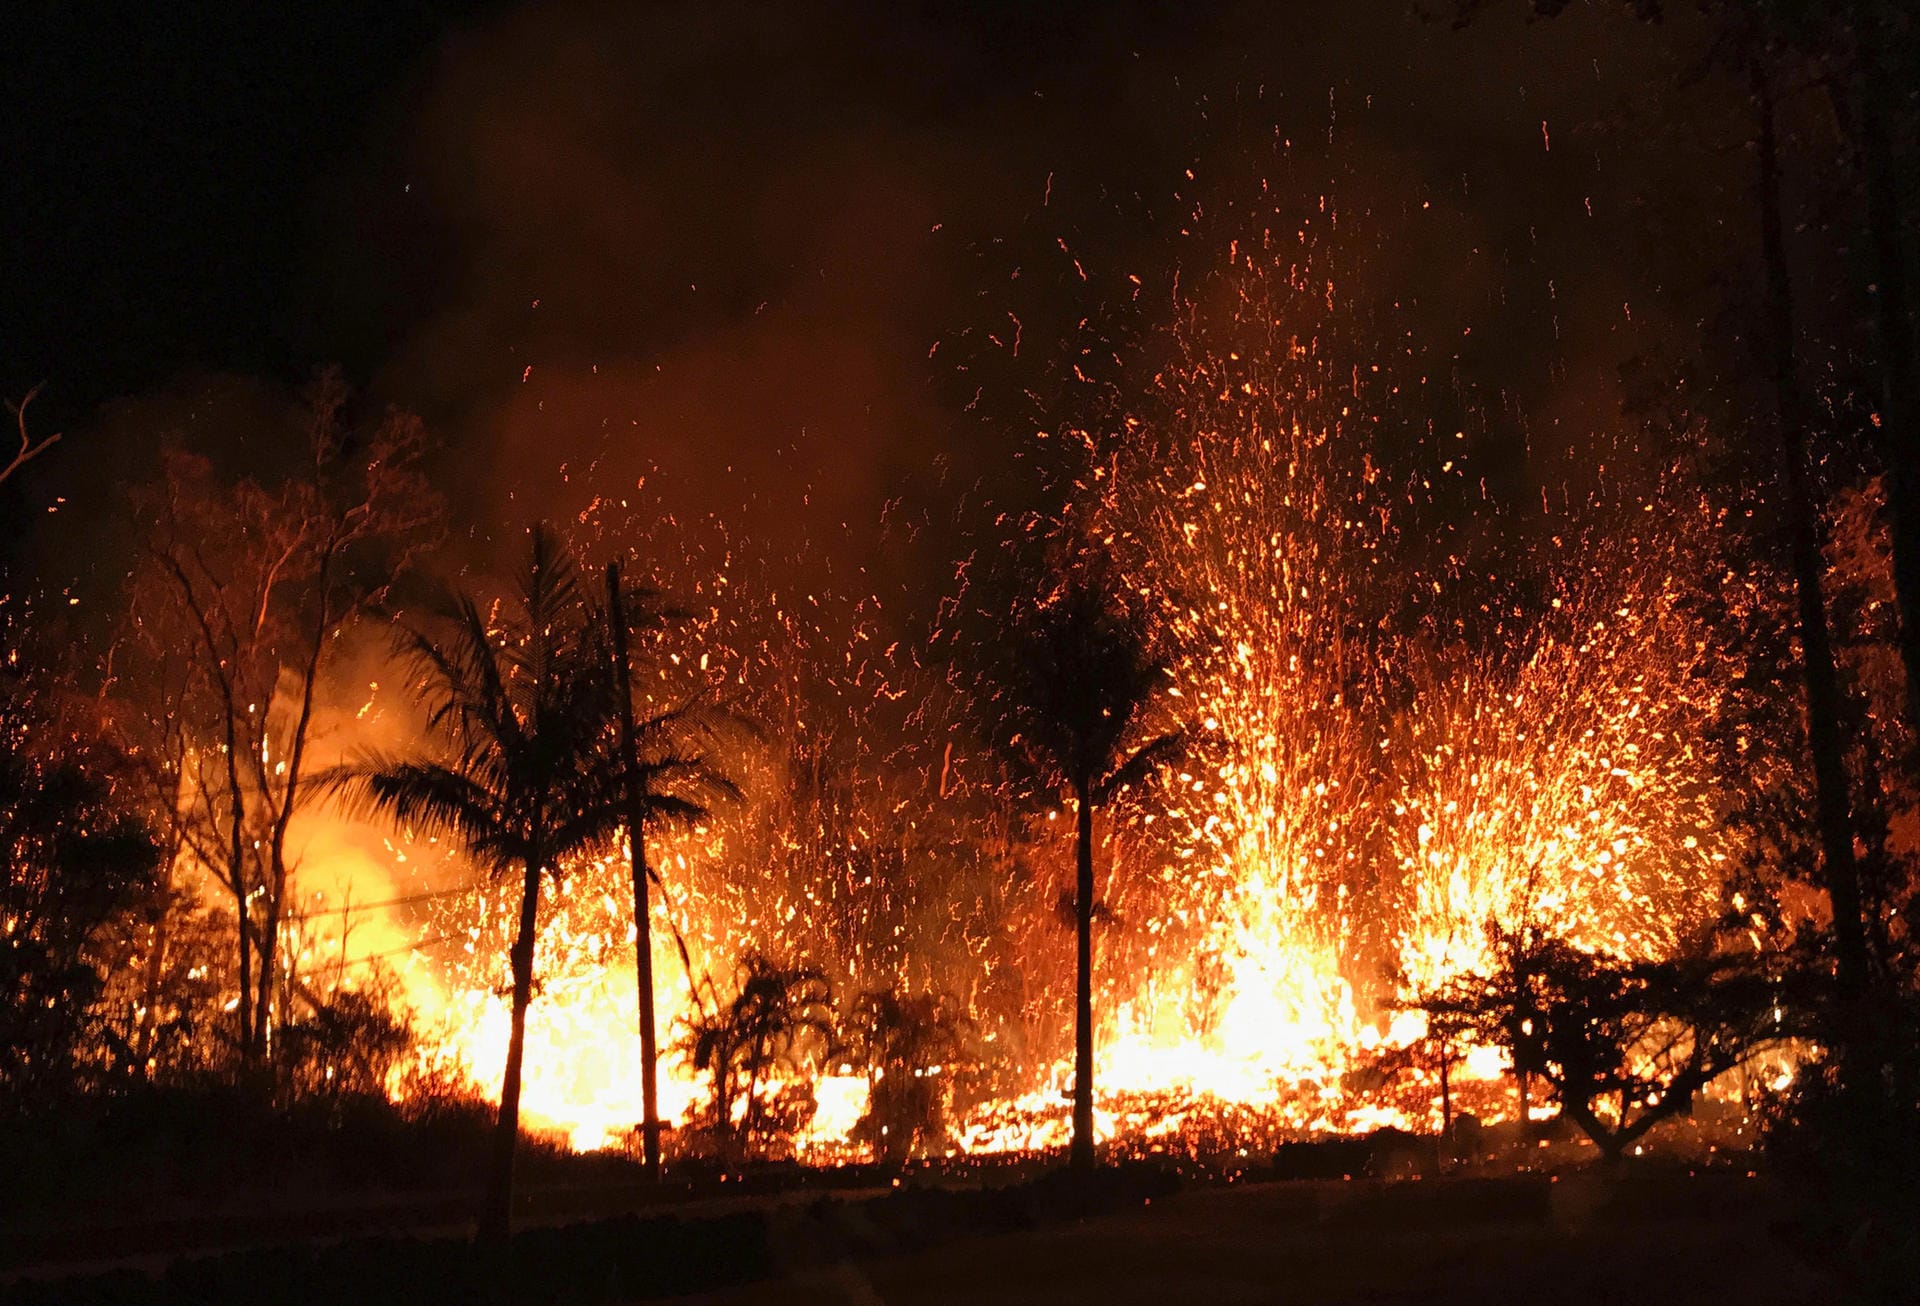 Magma spritzt aus der Erde auf Hawaii: Der Vulkanausbruch liefert Bilder eines faszinierenden und ebenso höchst gefährlichen Naturspektakels. Lavafontänen schießen durch Erdrisse. Zehn Risse hätten sich mittlerweile aufgetan, durch die Lava an die Erdoberfläche treten könnte.